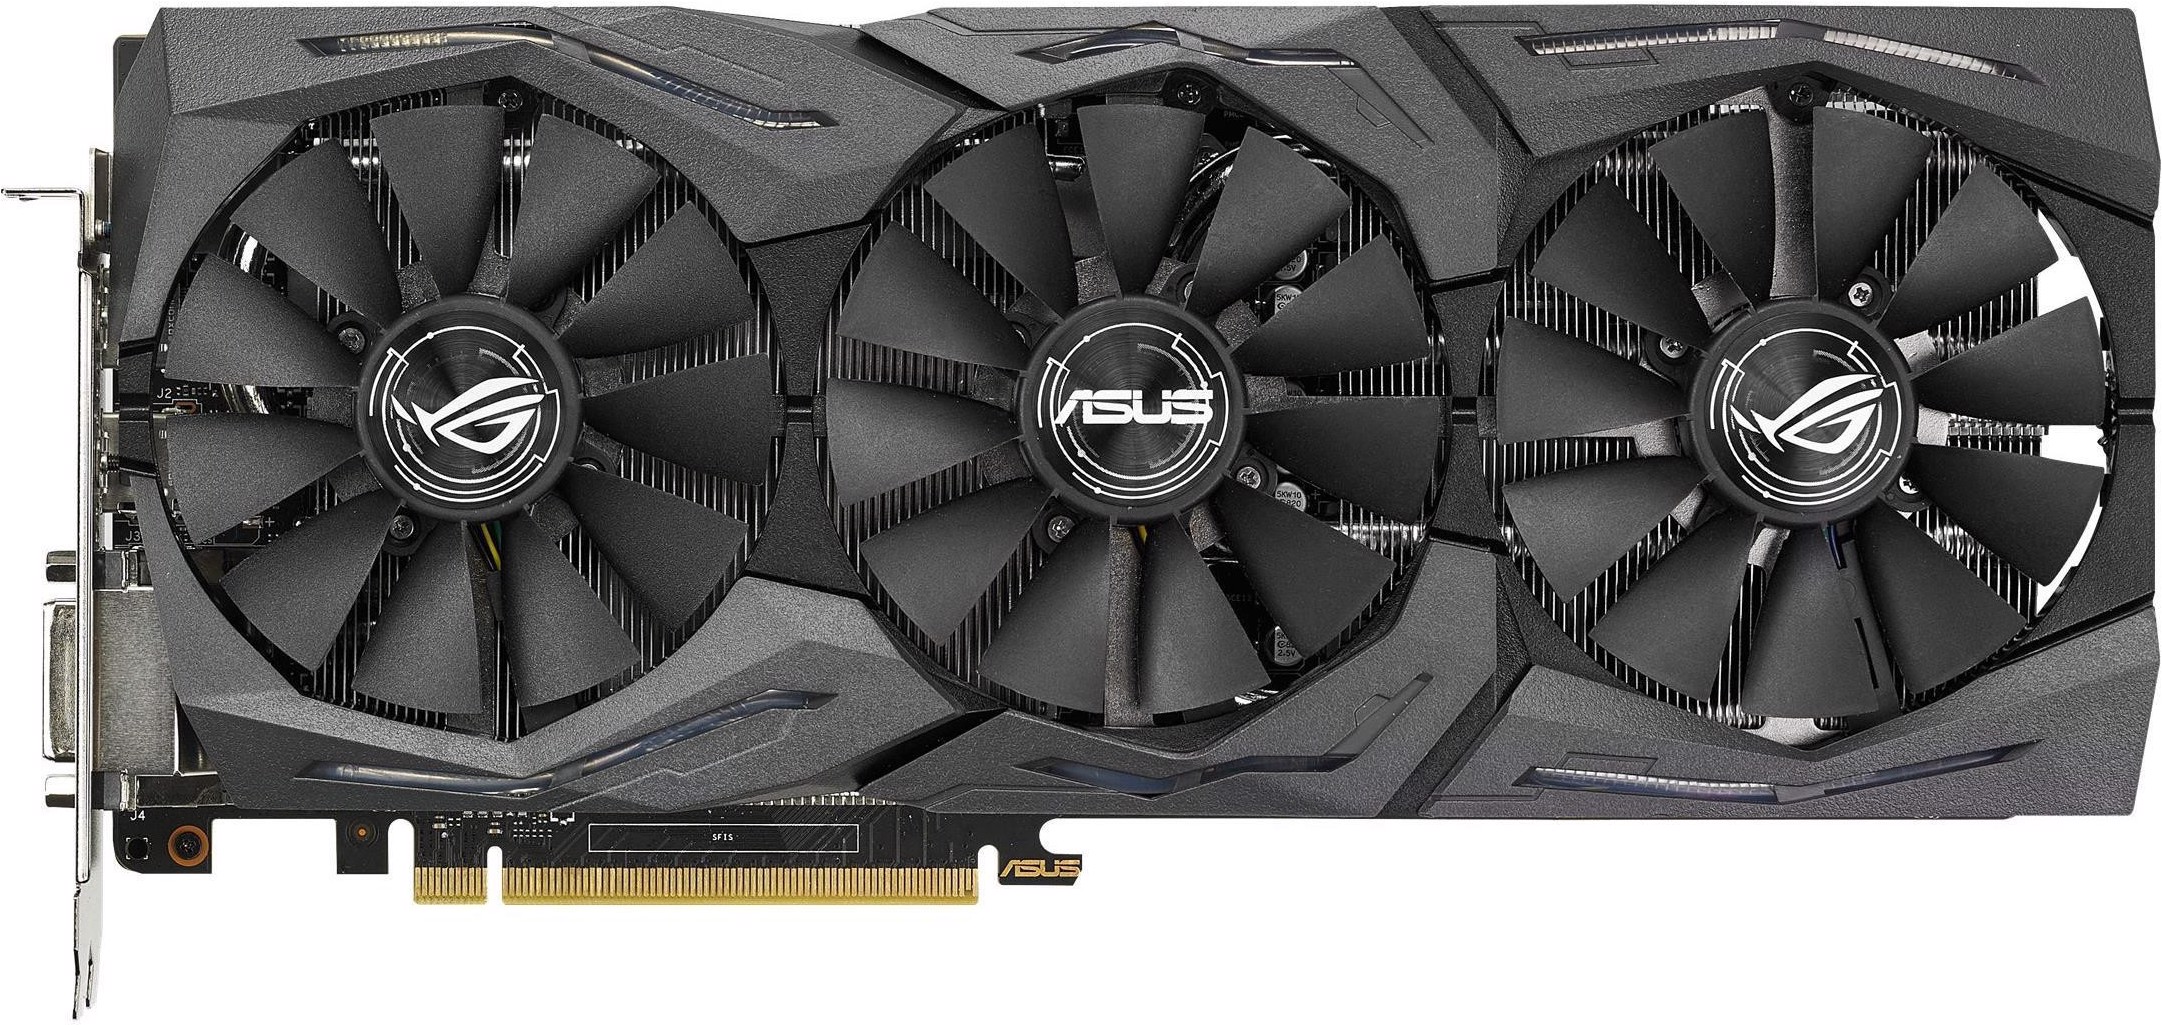 ASUS ROG STRIX GeForce GTX1070 8G GAMING (8 GB) kaufen